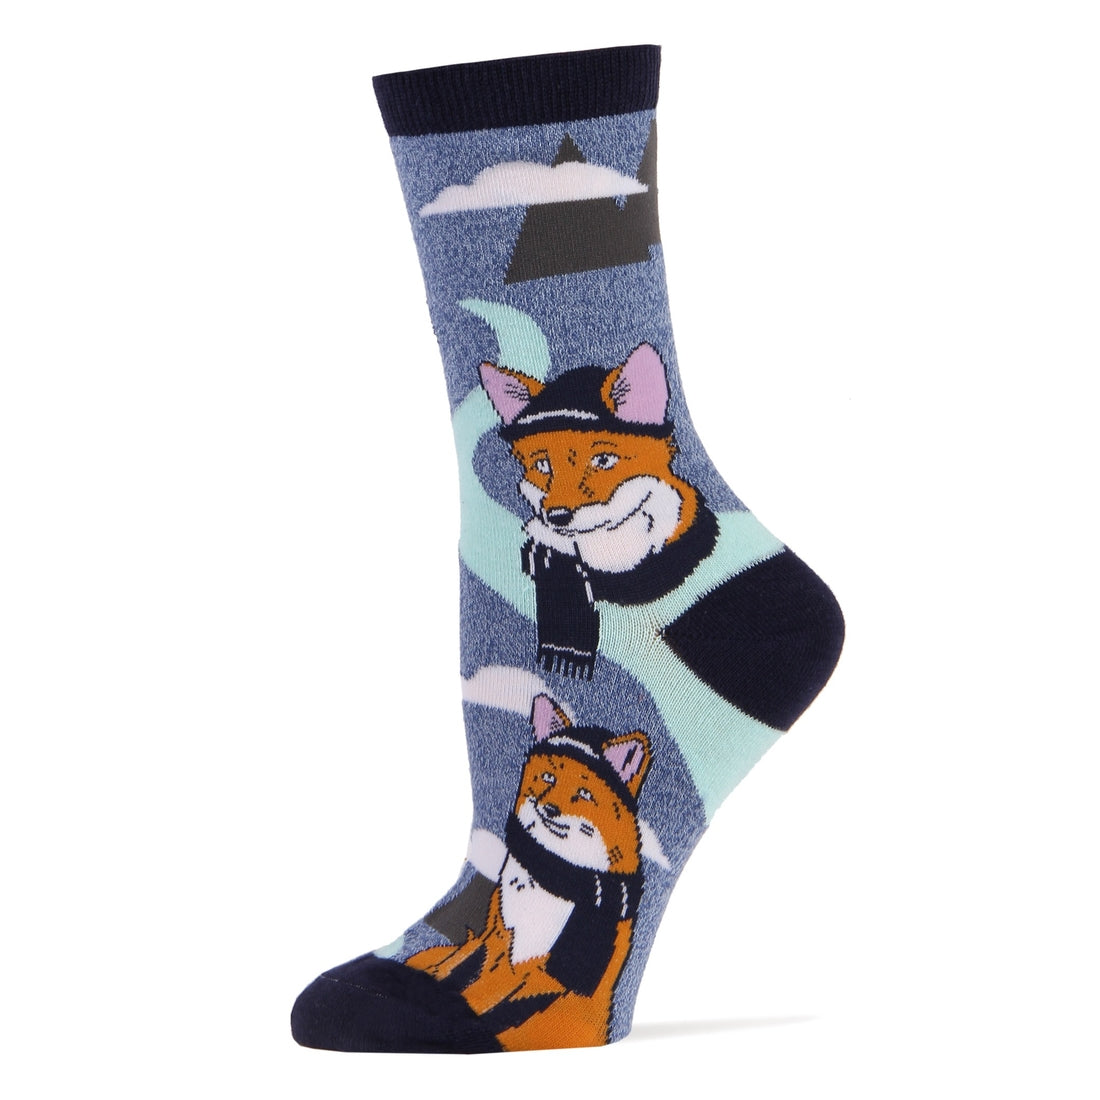 Oooh Geez Sock Fox Socks